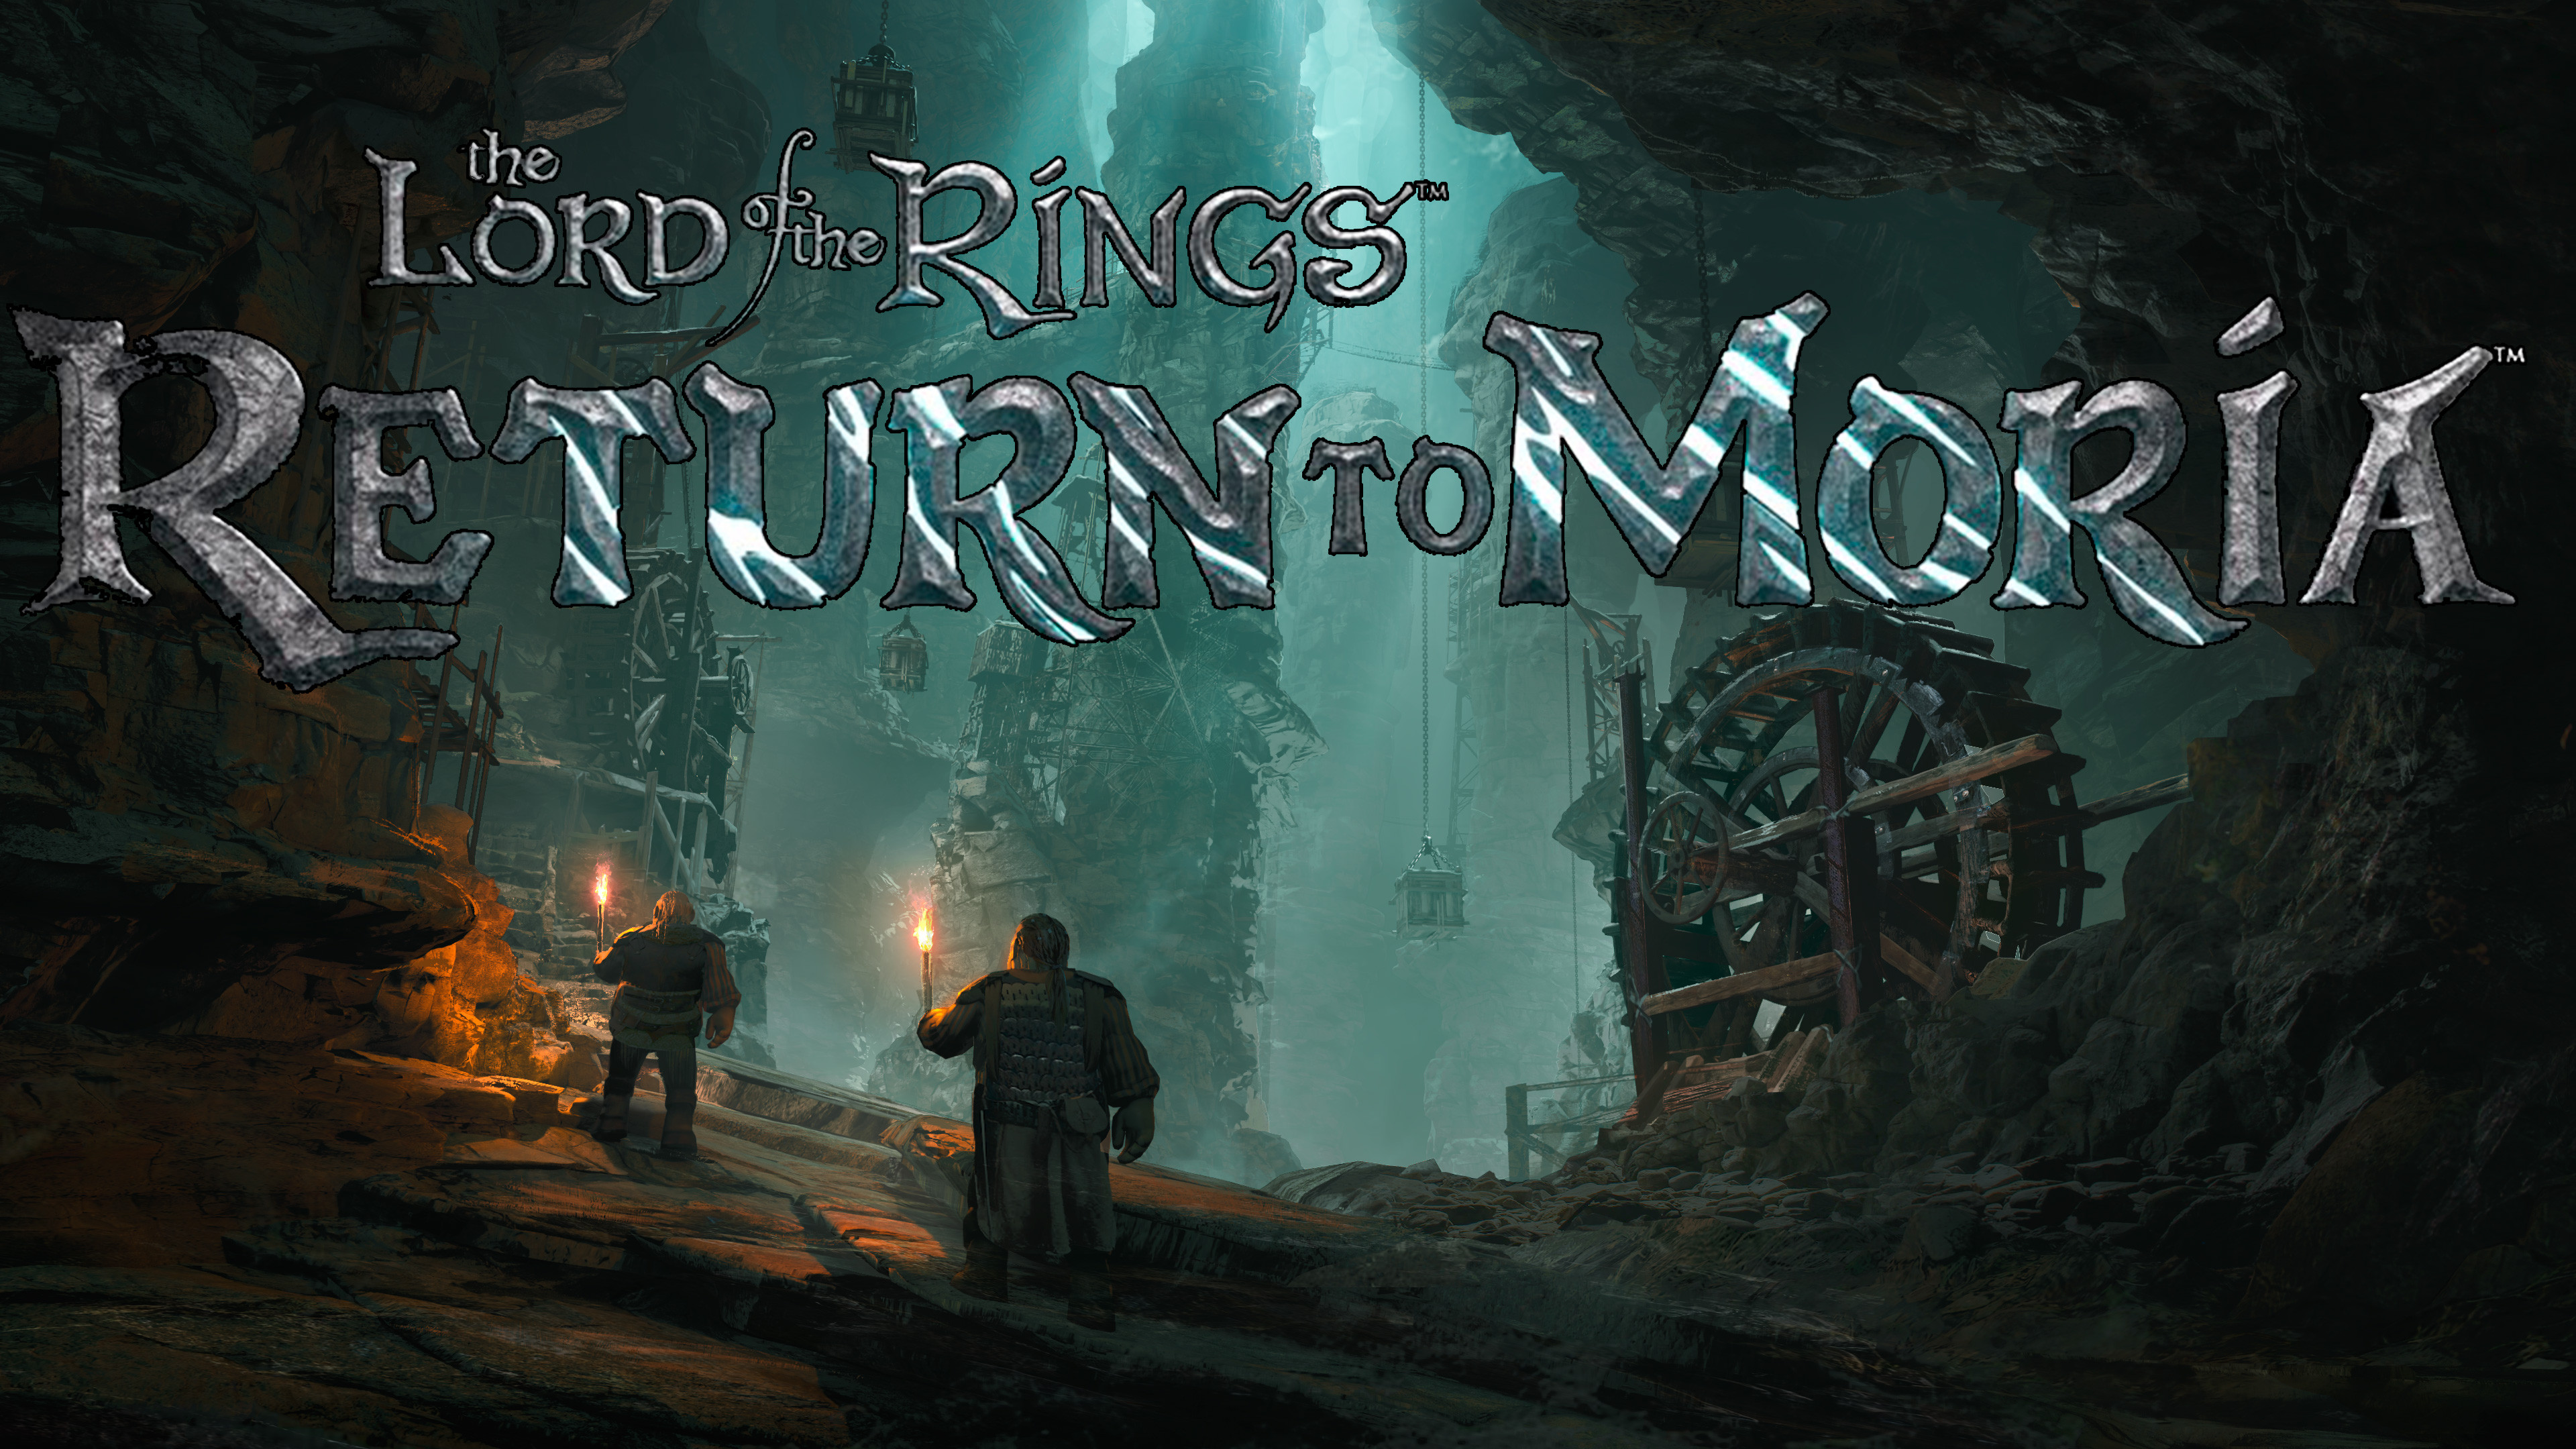 Lotr return to moria. The Lords of the Rings Return to Moria игра. Властелин колец Возвращение в Морию игра.